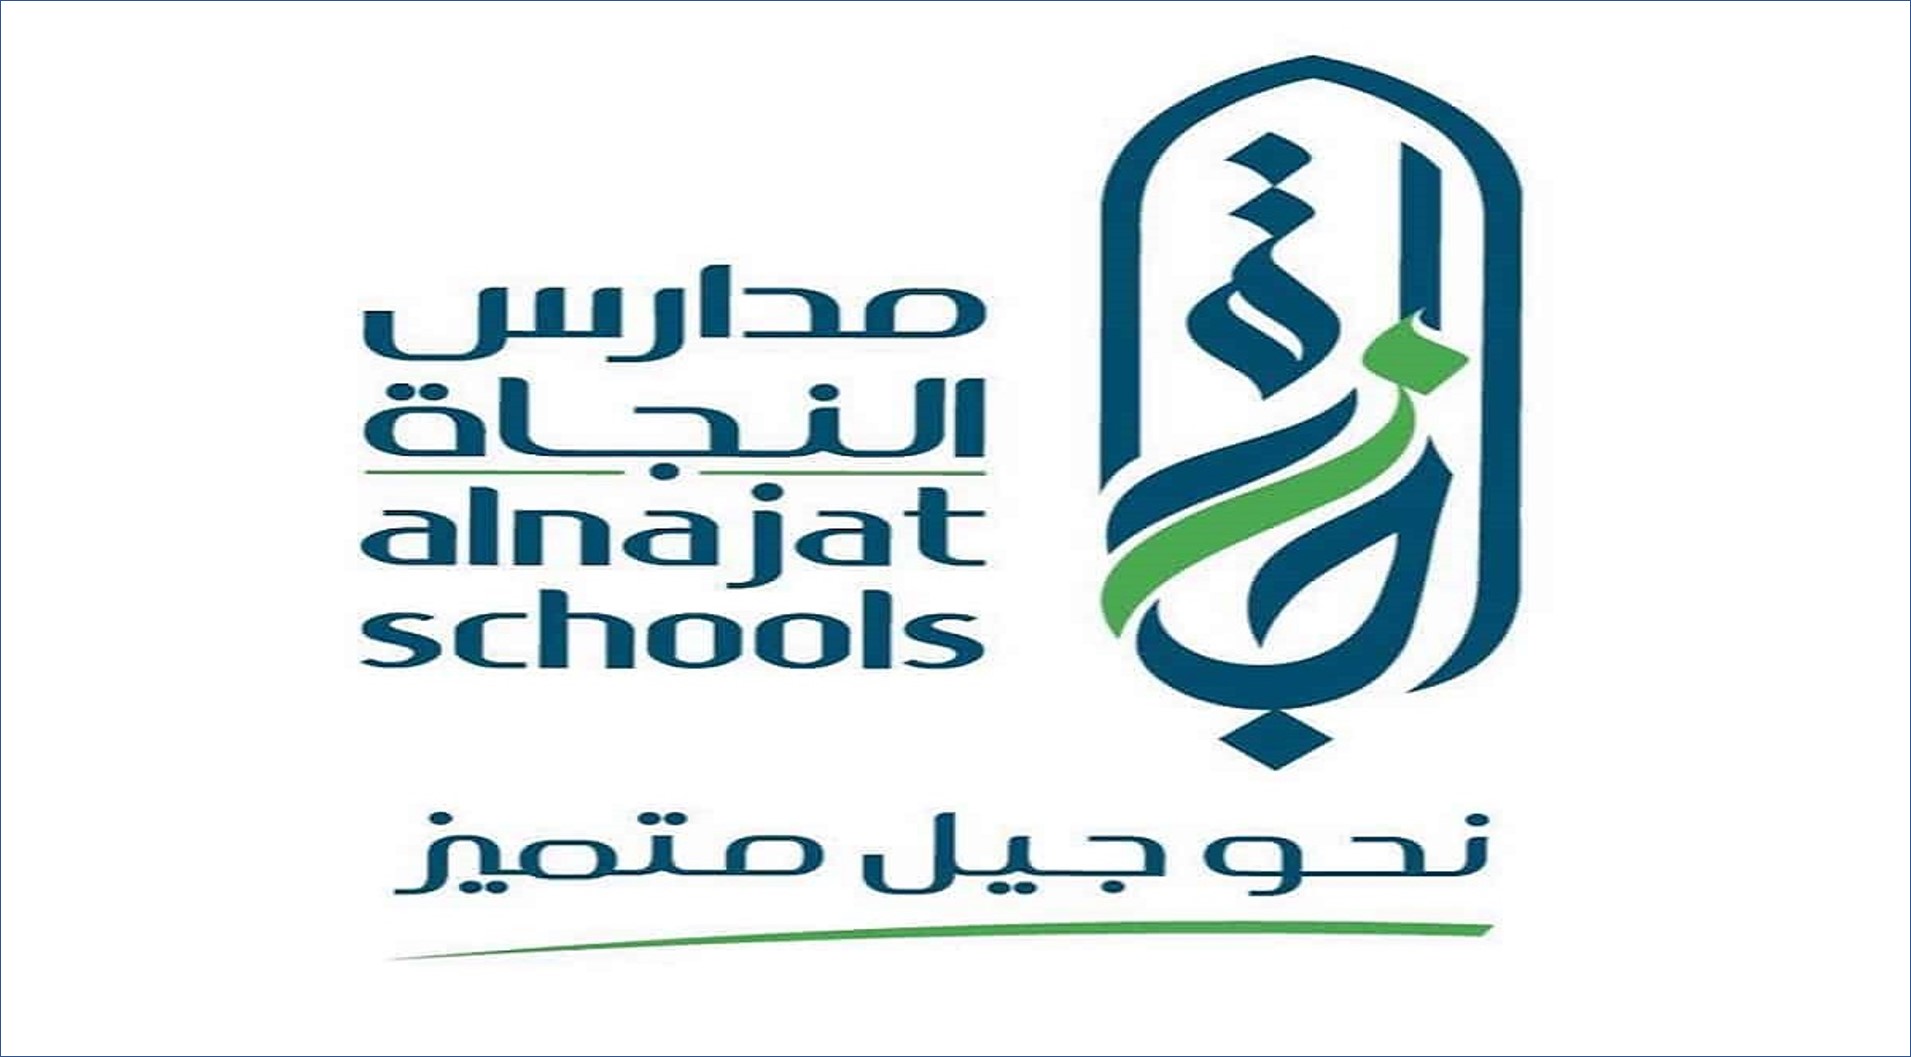 مدارس النجاة AL NAJAT SCHOOL بالكويت تعلن عن وظائف تعليمية